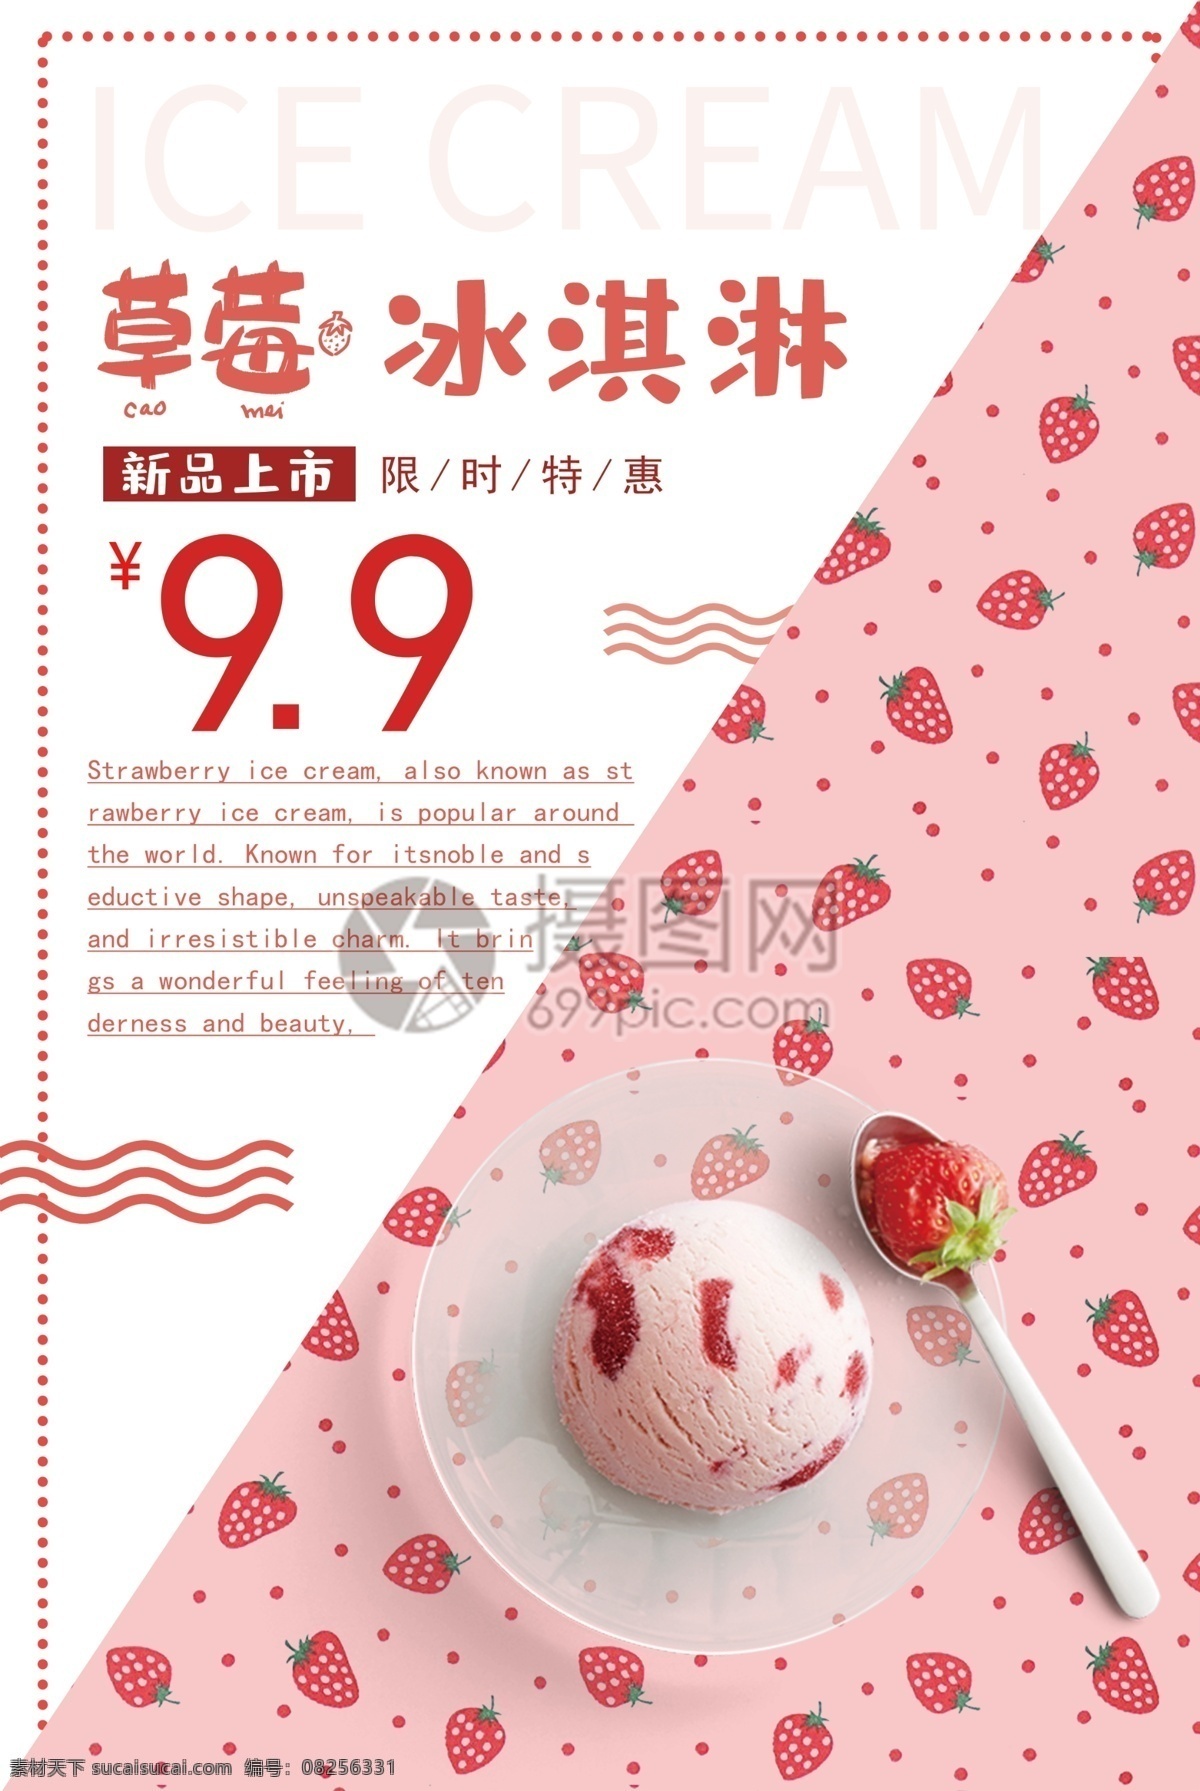 粉色 草莓 冰淇淋 海报 雪糕 粉色冰淇淋 新品上市 冰淇淋特惠 冷饮 冰饮 促销海报 冰激凌促销